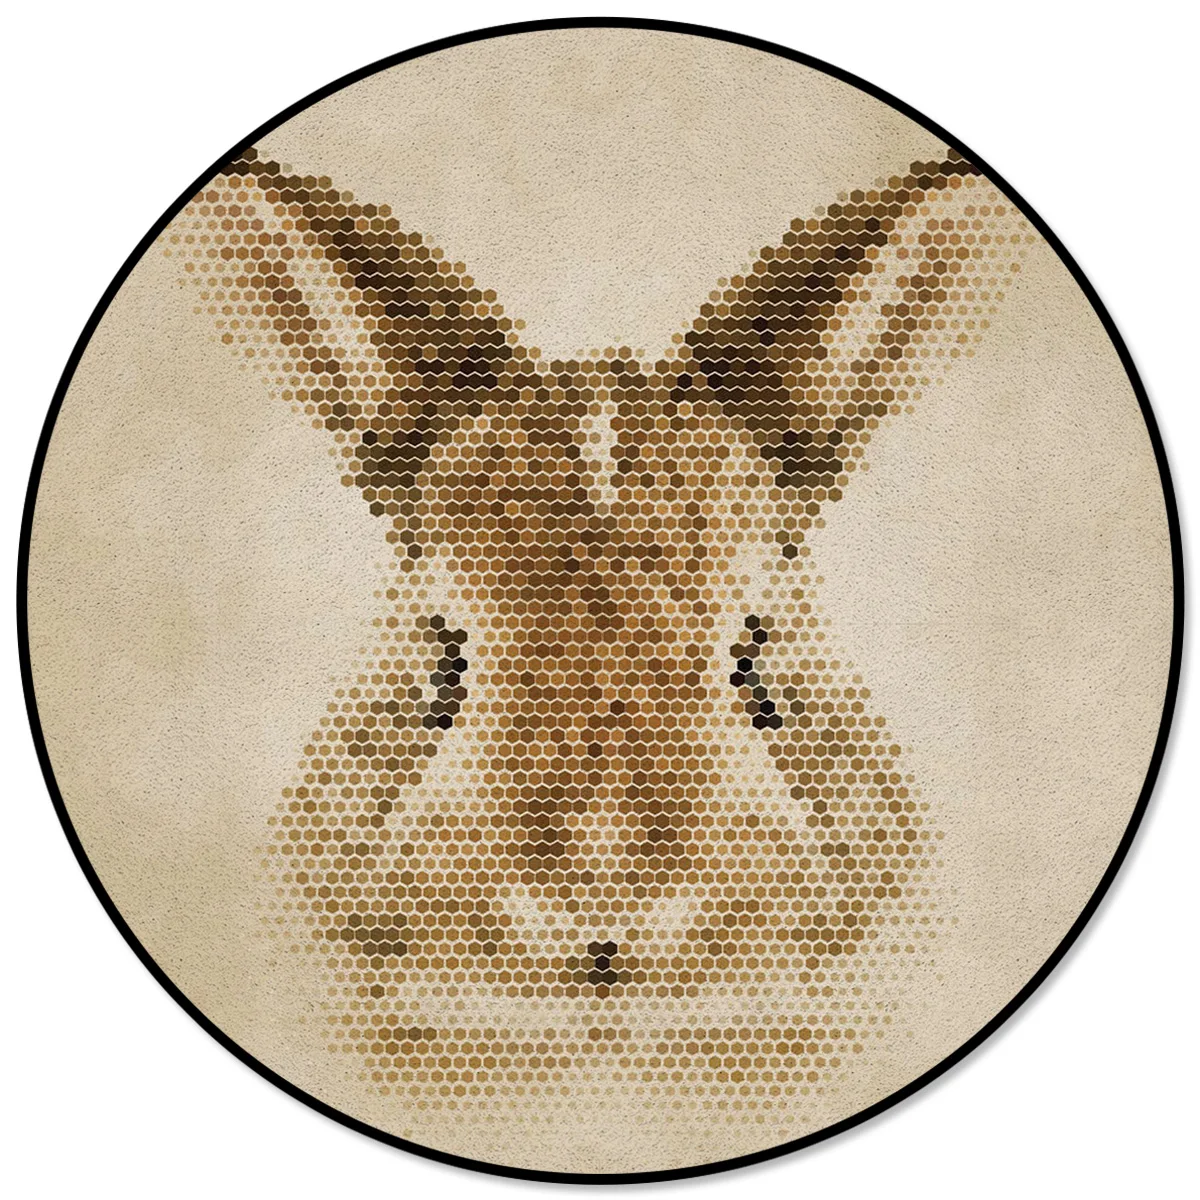 

Коврики и ковровые покрытия с рисунком кролика в горошек для дома, гостиной, Круглый нескользящий ковер для детской комнаты